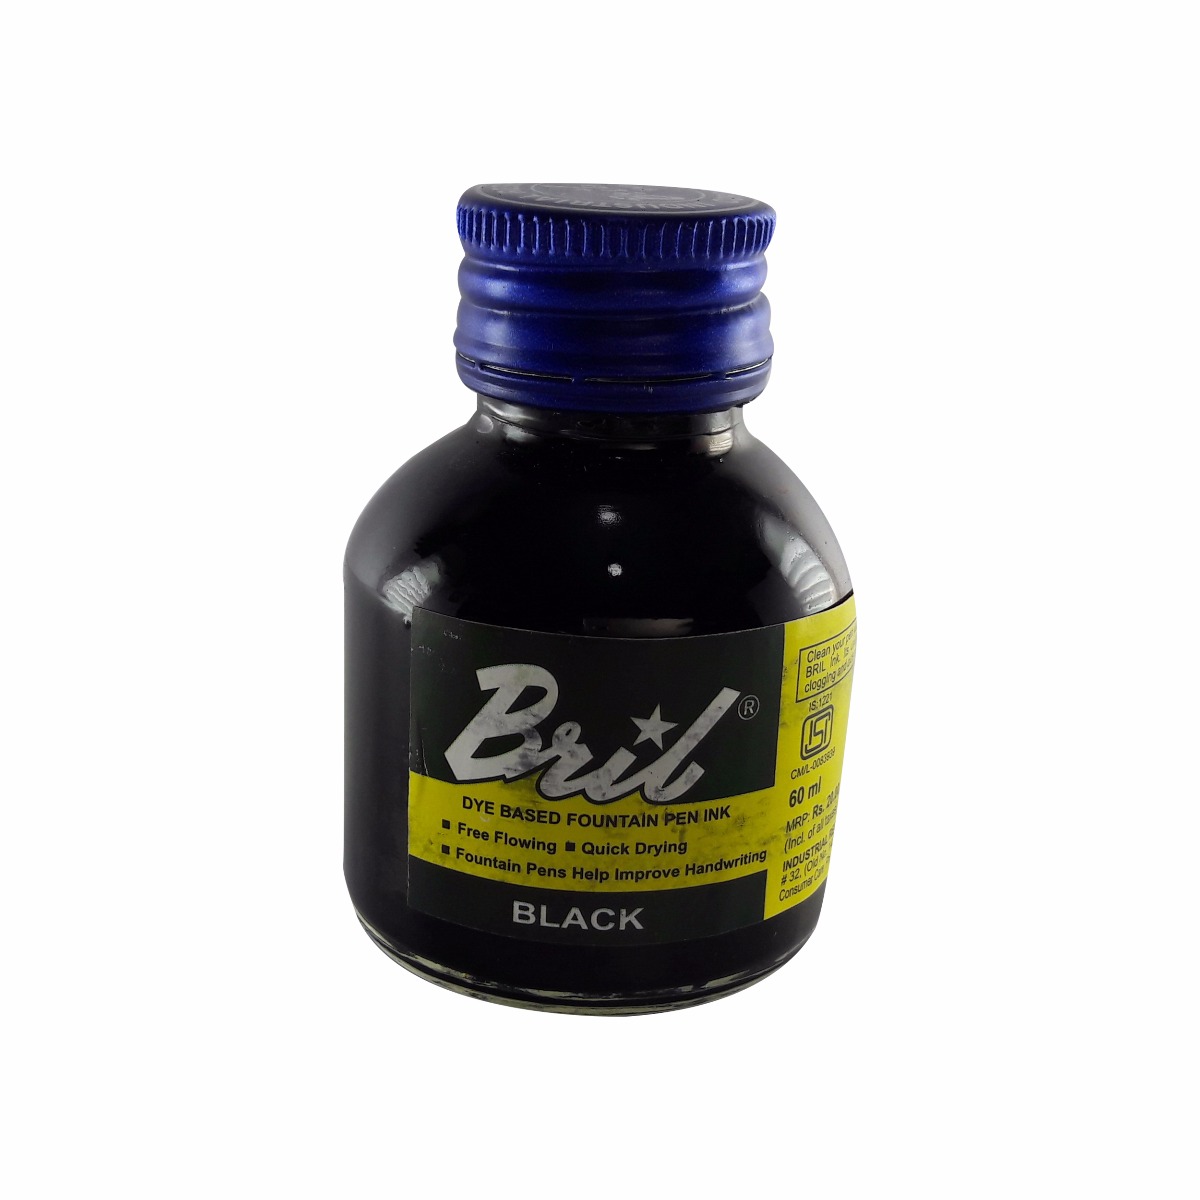 Bril Model: 70014 Black color 60ml ink bottle